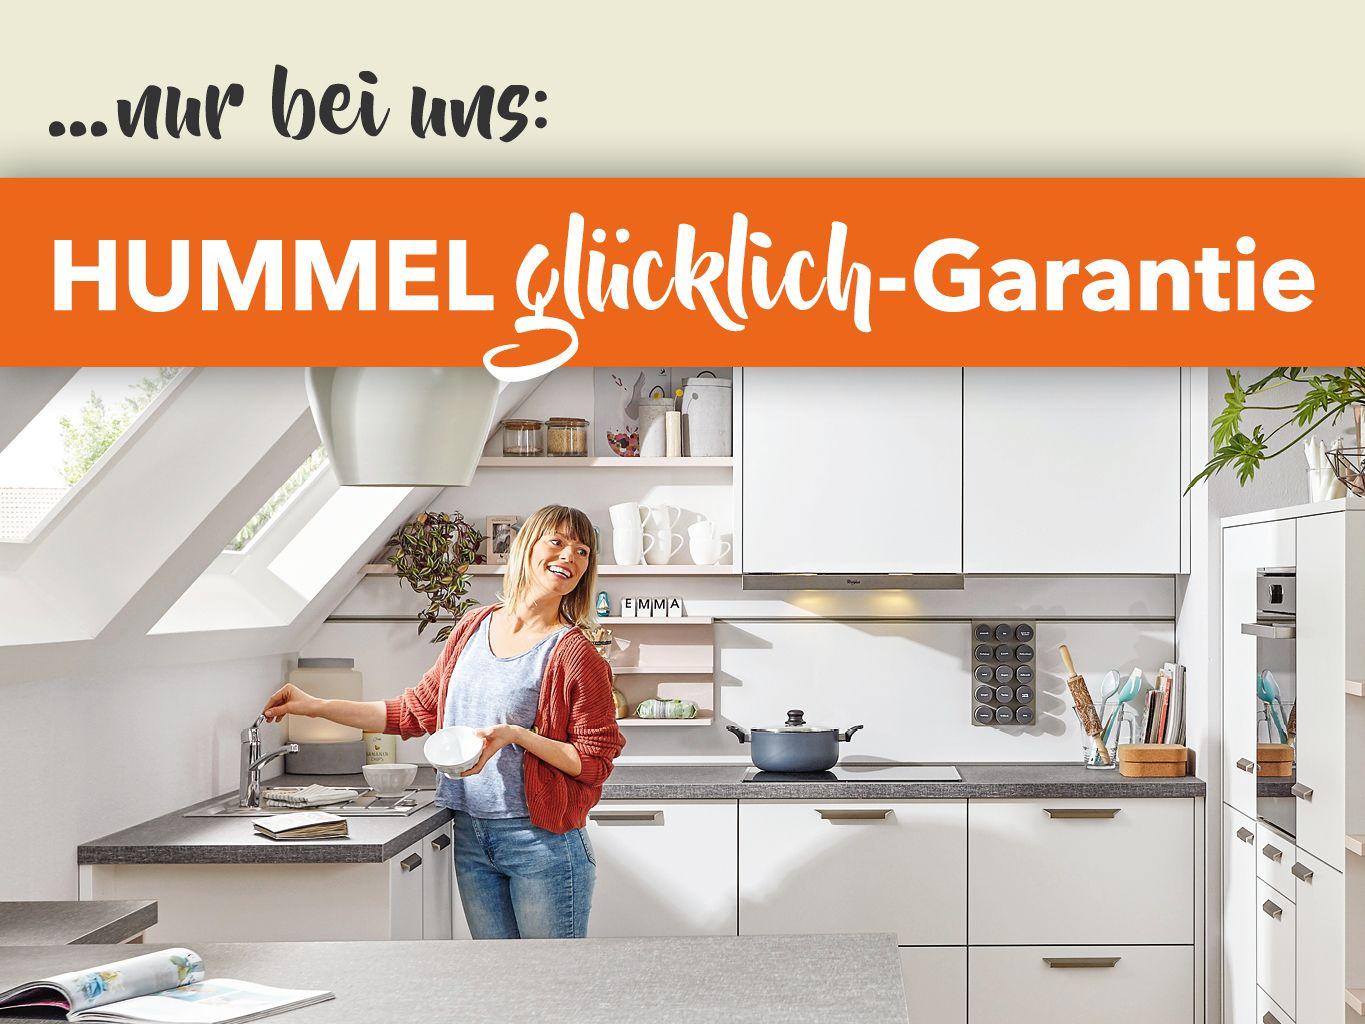 Hummel_Gluecklich-Garantie_WebBanner-1024x768_23-06_1a.jpg